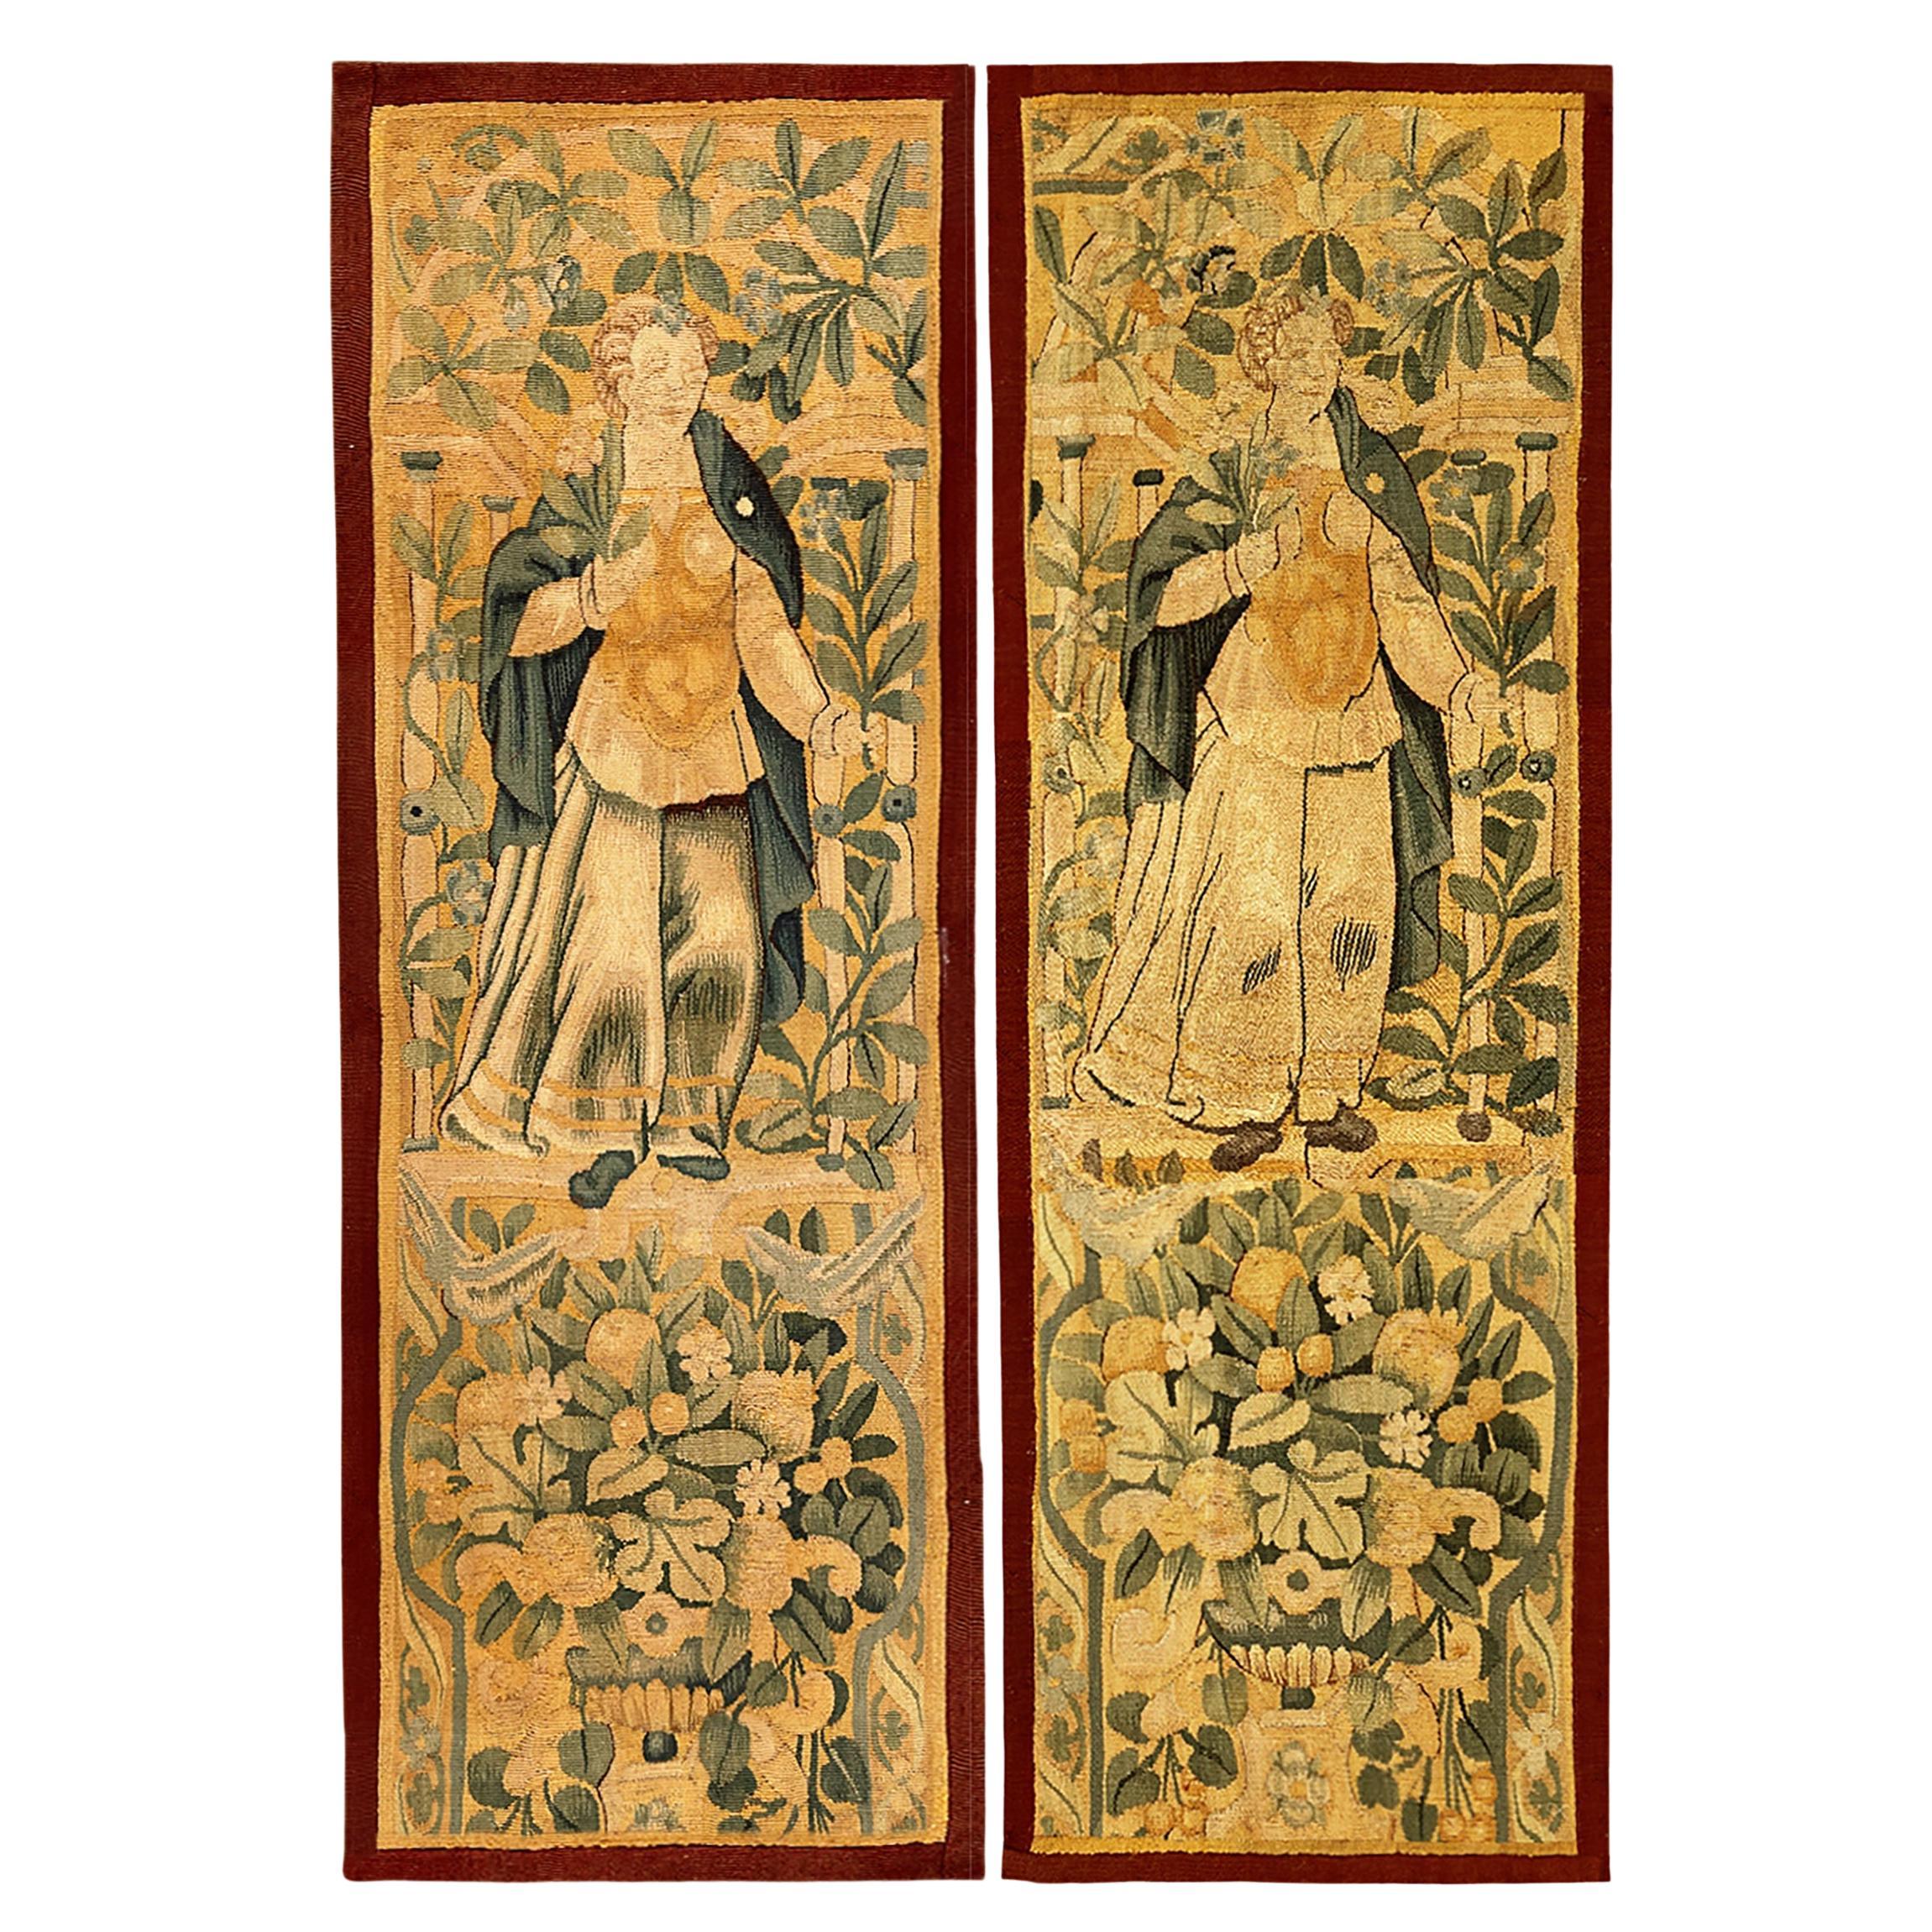 Paire de panneaux de tapisserie flamande du 17ème siècle avec figures féminines et réserves florales en vente